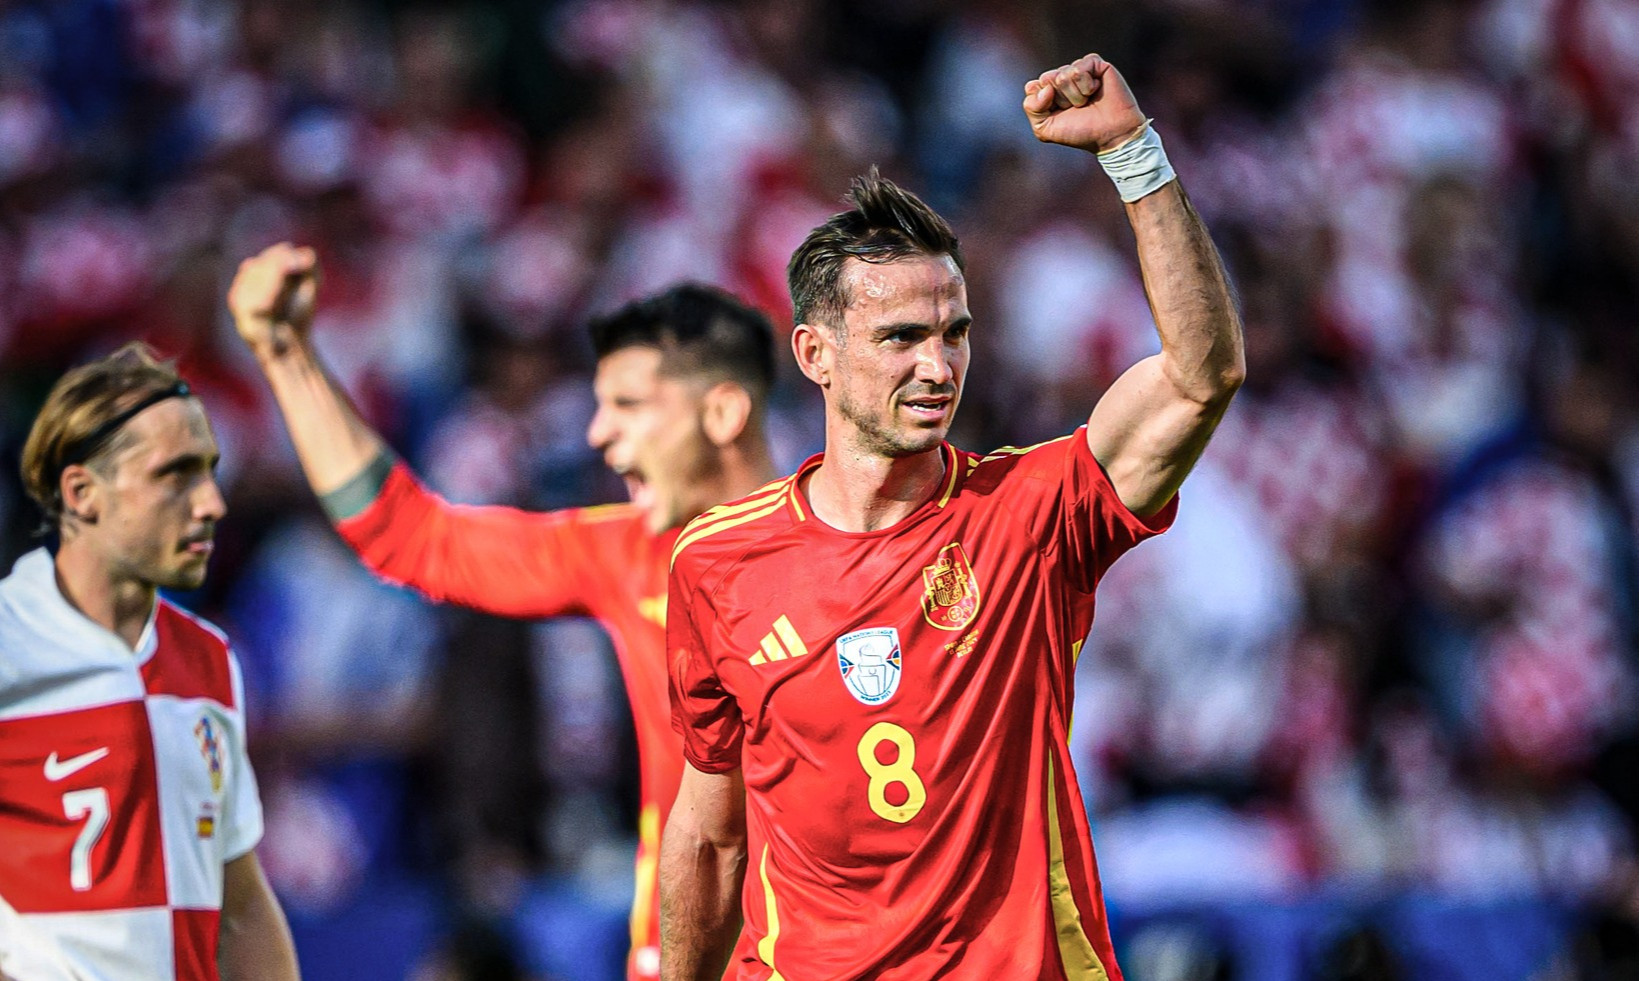 УЄФА визначила найкращого гравця матчу Іспанія — Хорватія